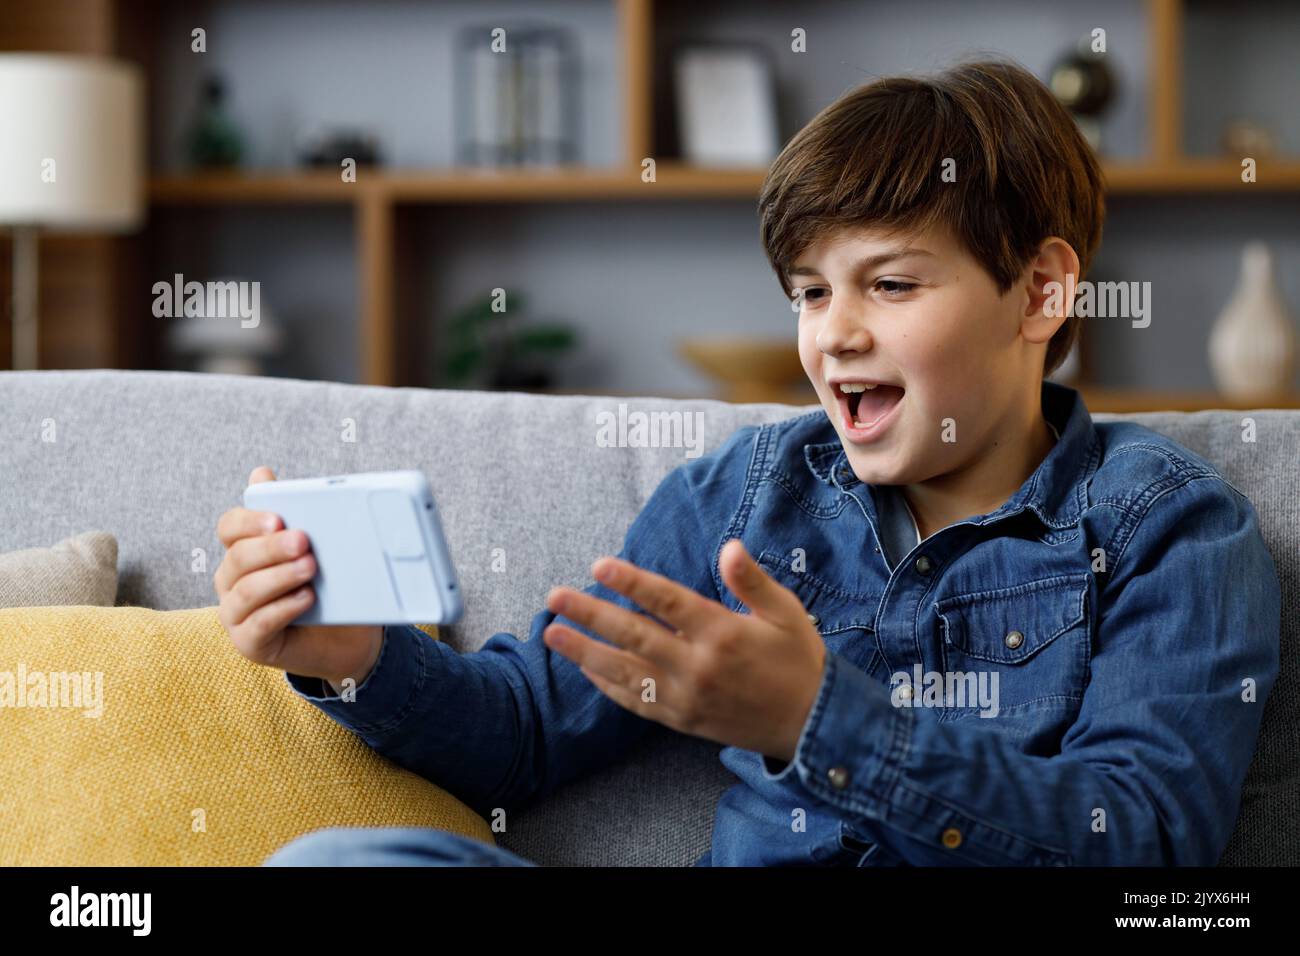 Le jeune garçon réagit émotionnellement à ce qui se passe sur l'écran du smartphone. Adolescent passant du temps chez lui avec un gadget numérique. Adolescence et Banque D'Images